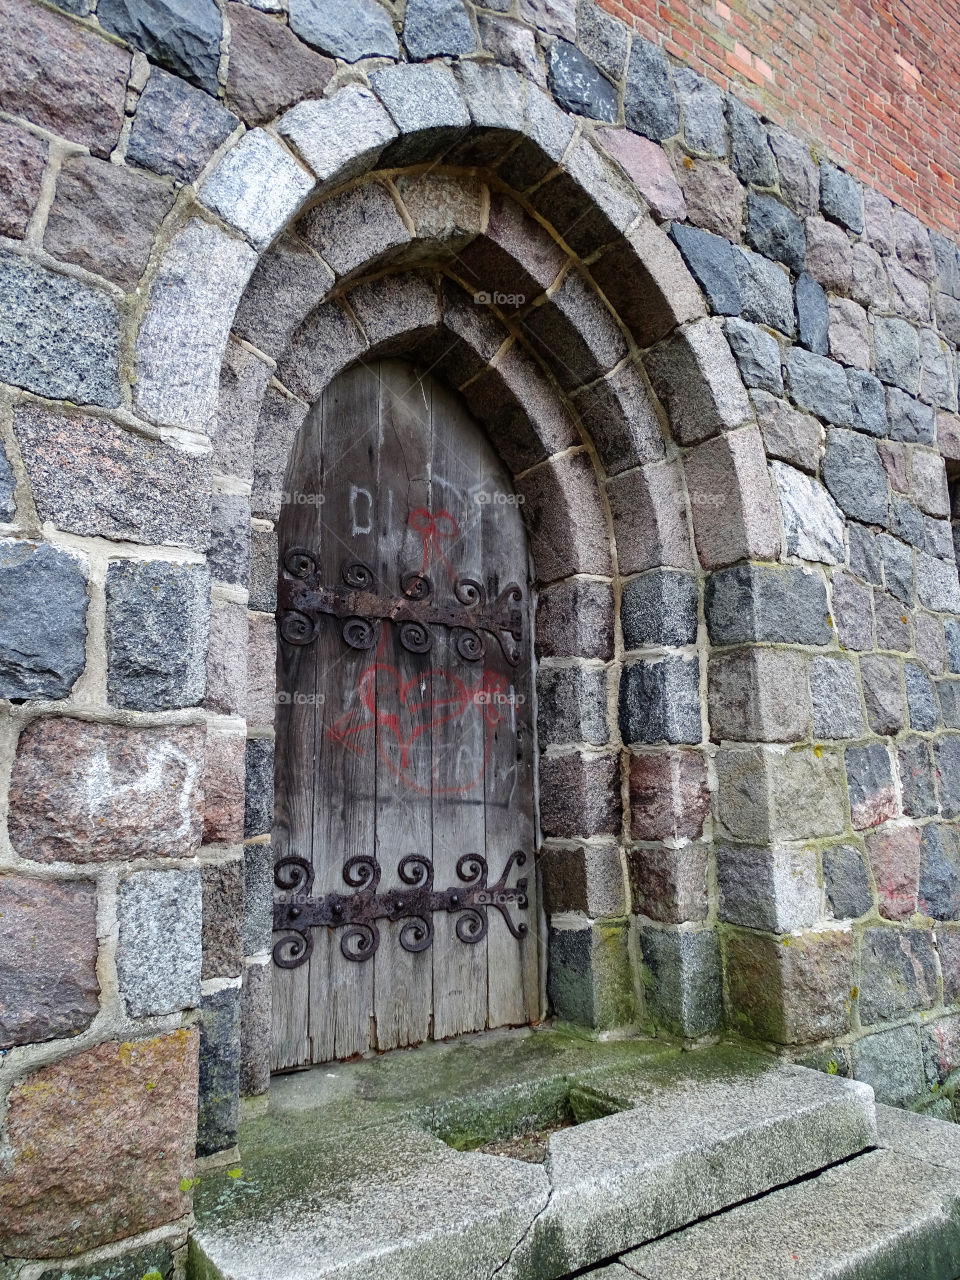 Arch shaped wooden door